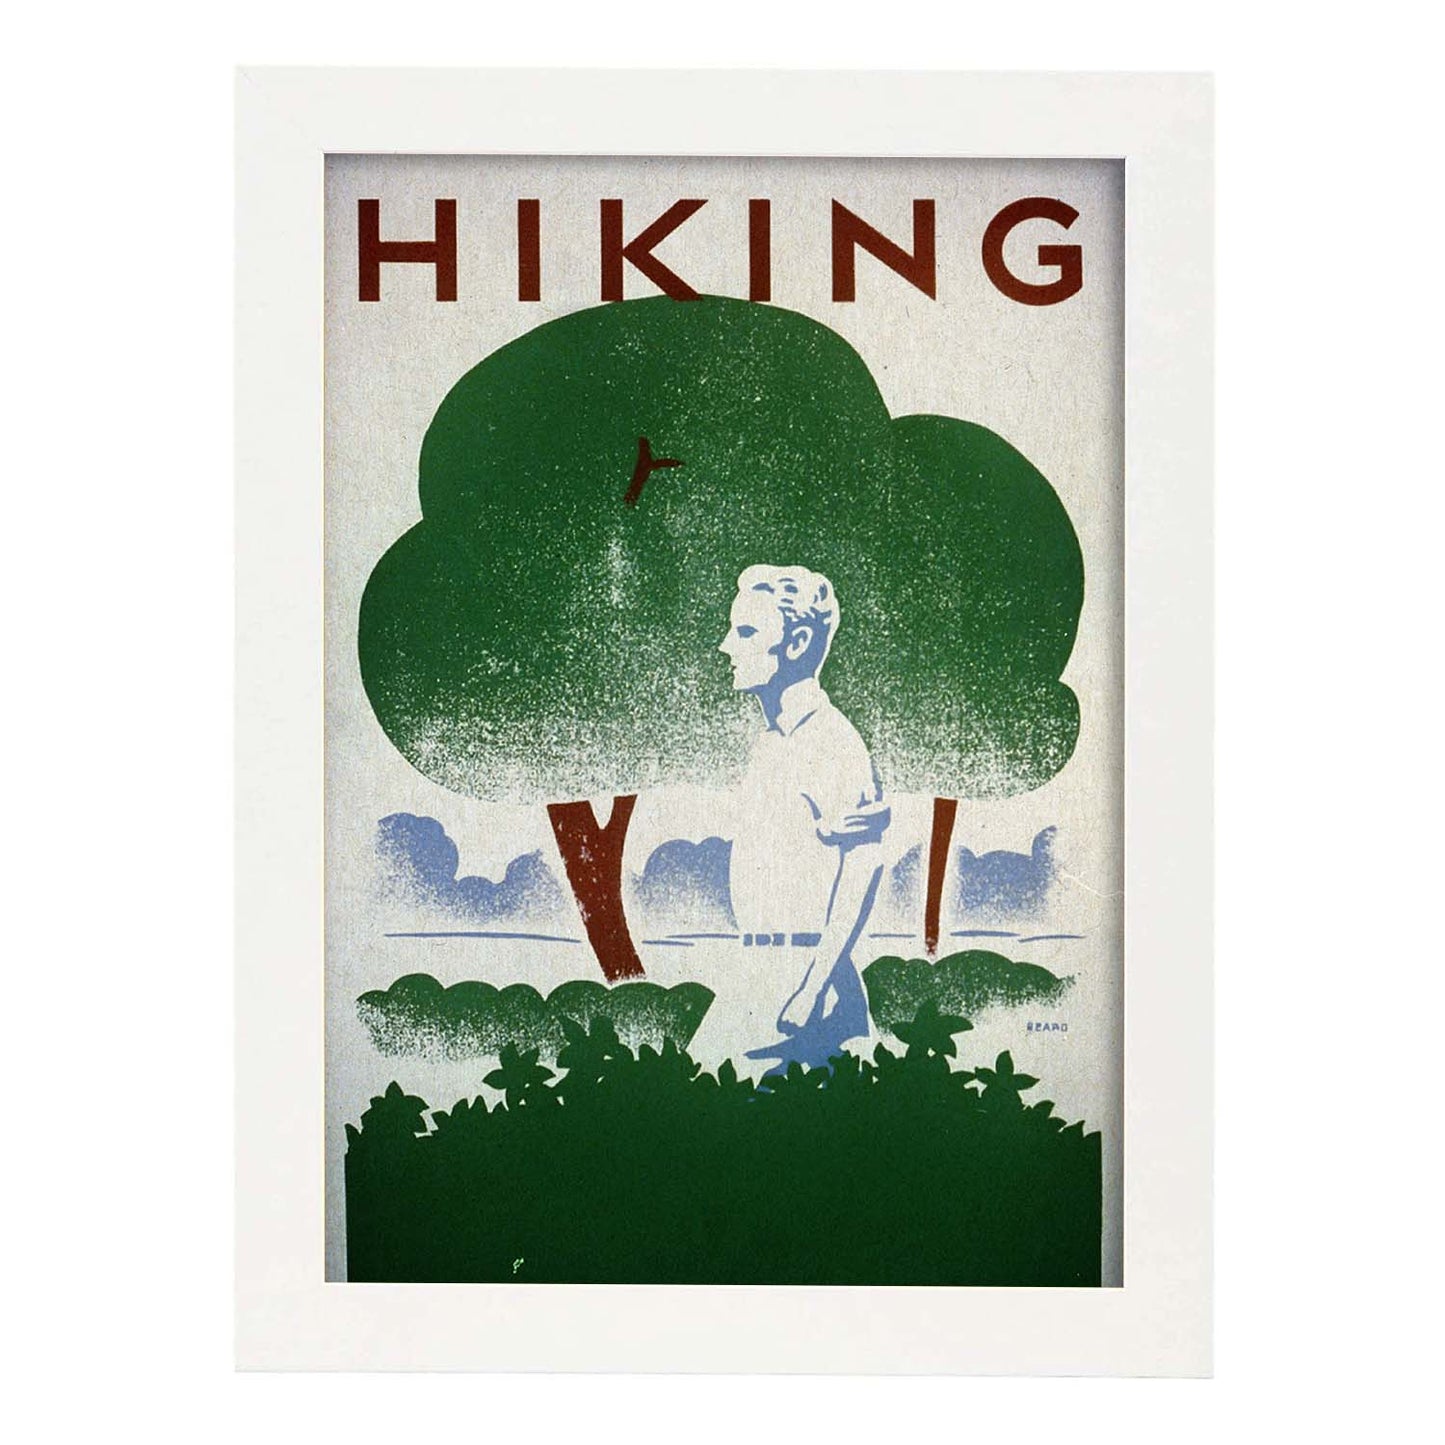 Poster vintage. Cartel vintage para campaña "Hiking". Departamento de parques..-Artwork-Nacnic-A3-Marco Blanco-Nacnic Estudio SL